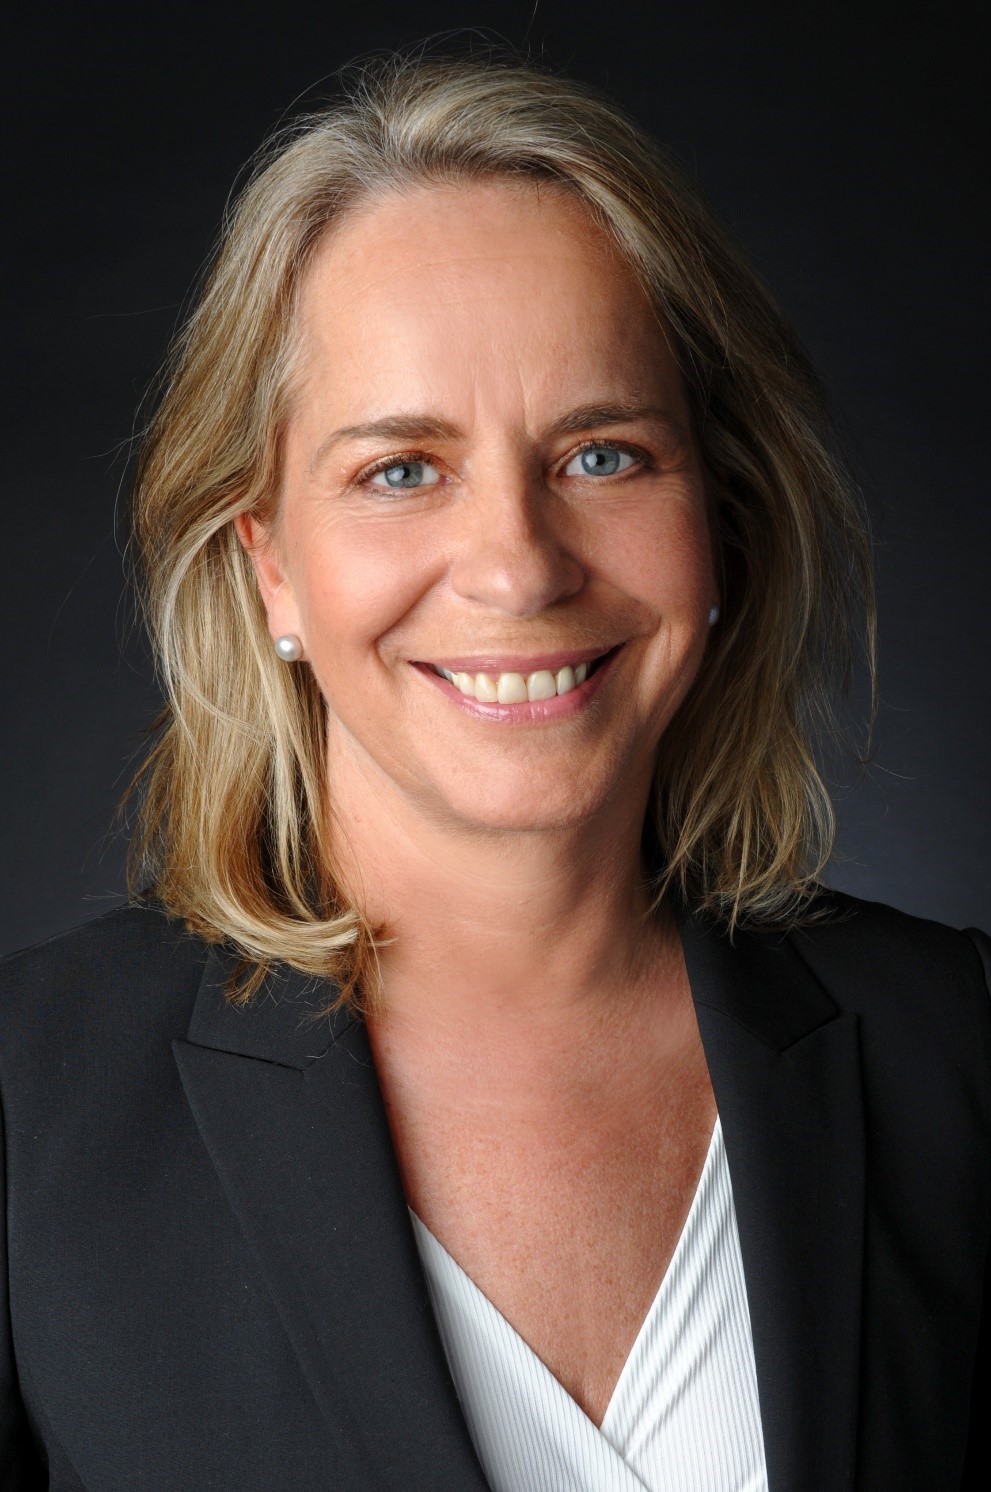 Karin Schattenfroh, Dozentin des Studiengangs MBA Verantwortung, Führung und Kommunikation der Campus-Akademie der Universität Bayreuth